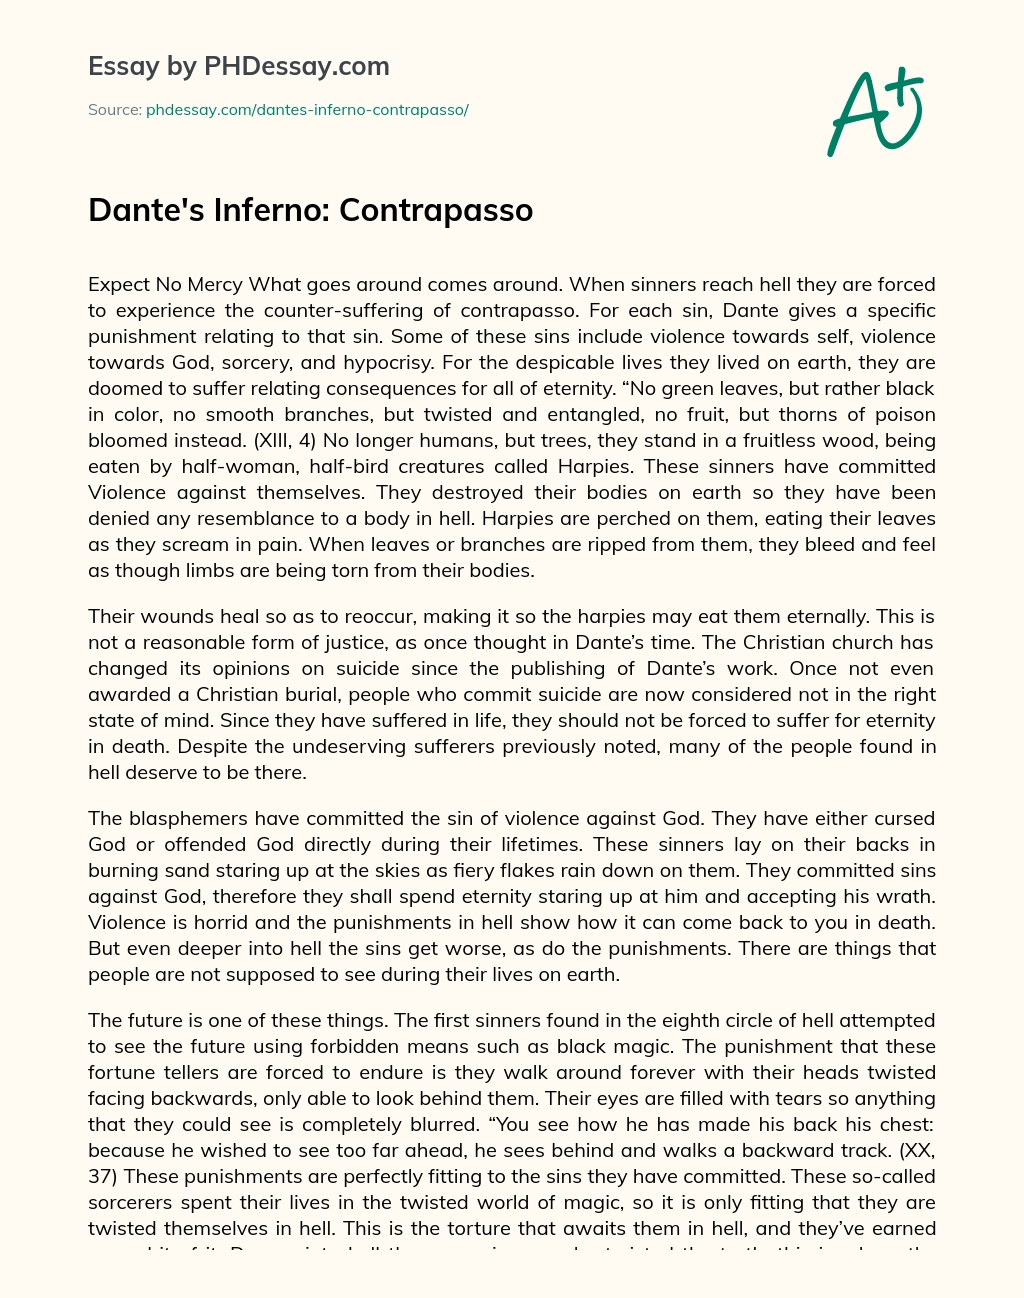 Dante’s Inferno: Contrapasso essay